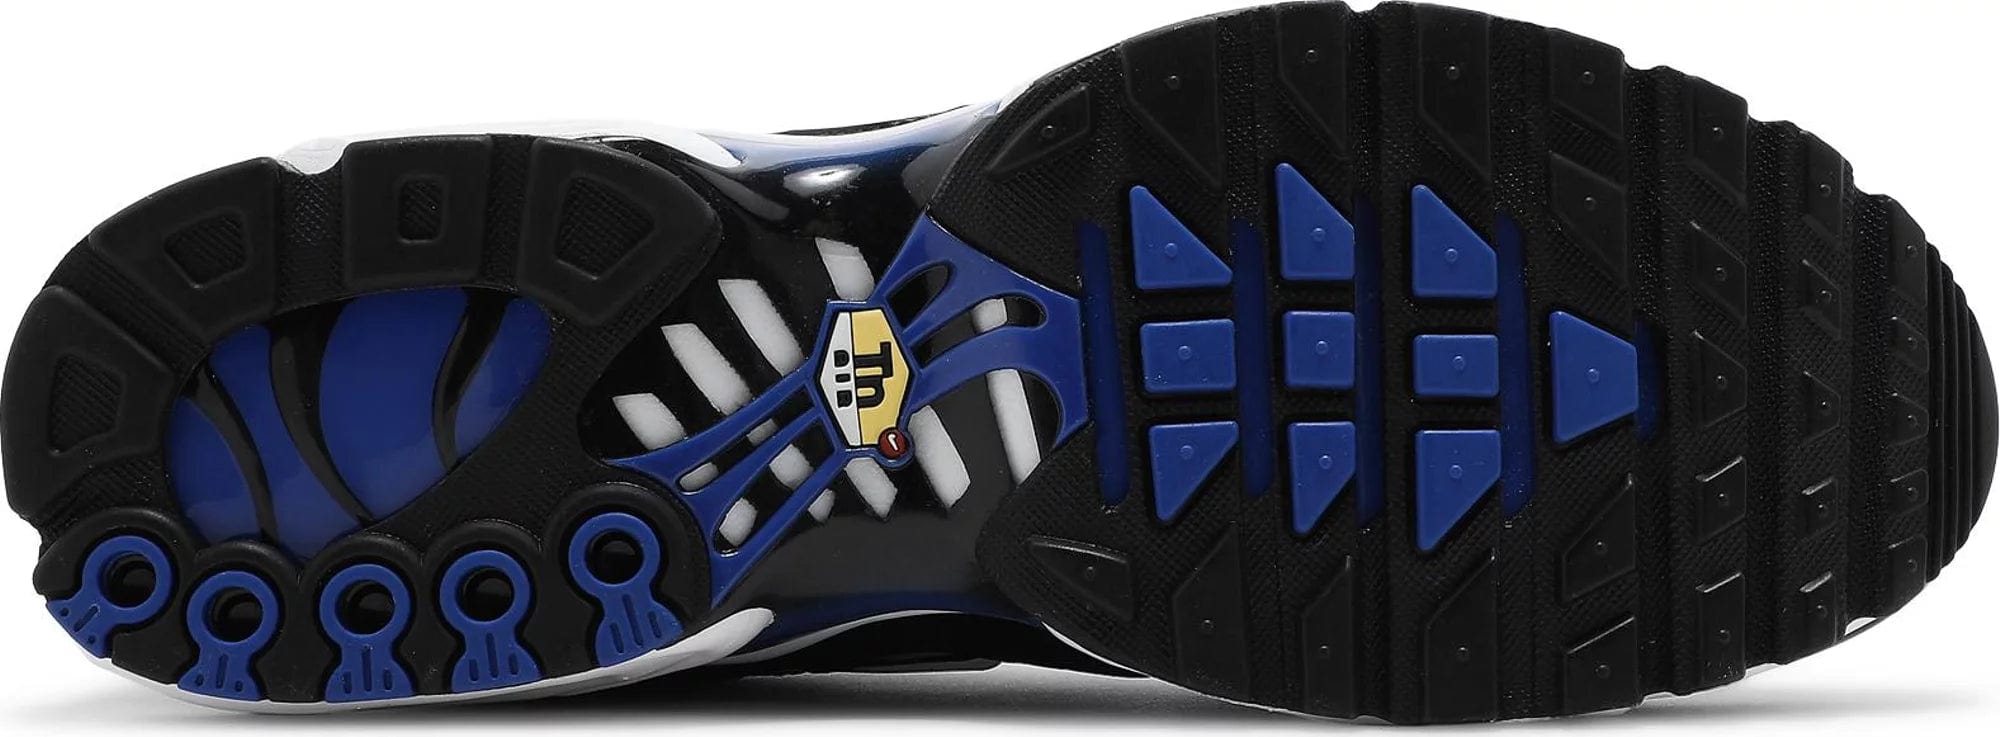 sneakers Nike Air Max Plus TN Racer Blue Men's